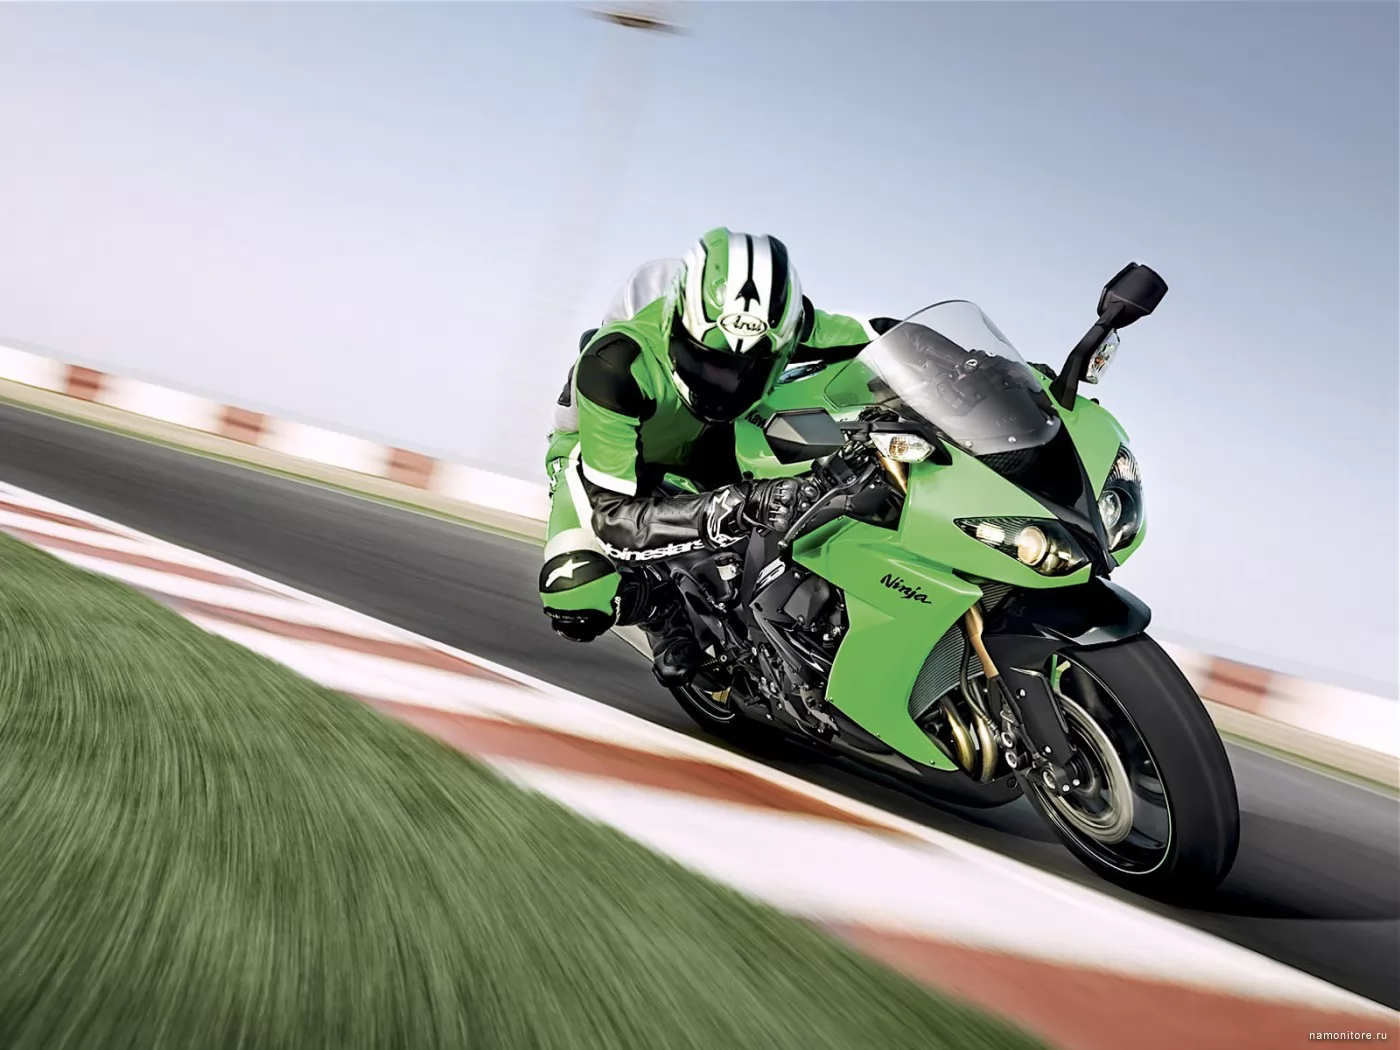 Kawasaki Ninja ZX 10R, green, highway, Kawasaki, motorcycles, speed, technics x